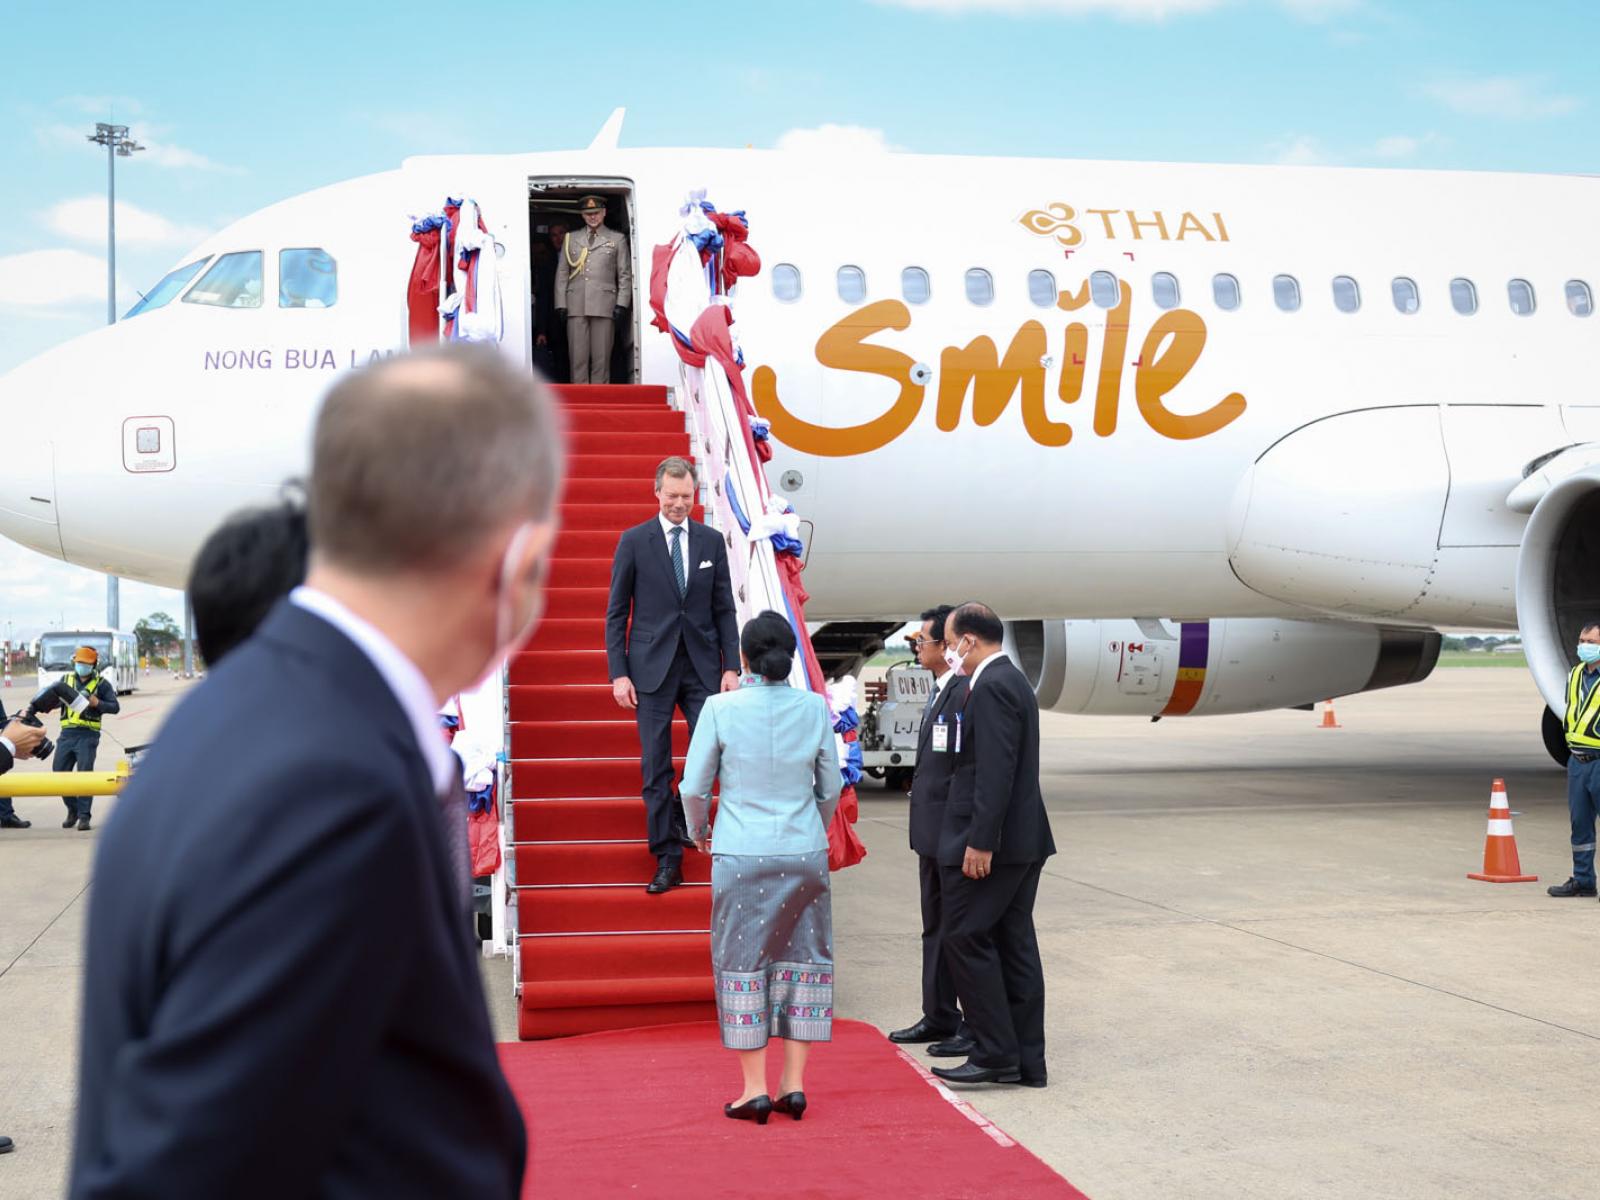 Le Grand-Duc descend de l'avion juste avant son accueil par la délégation lao